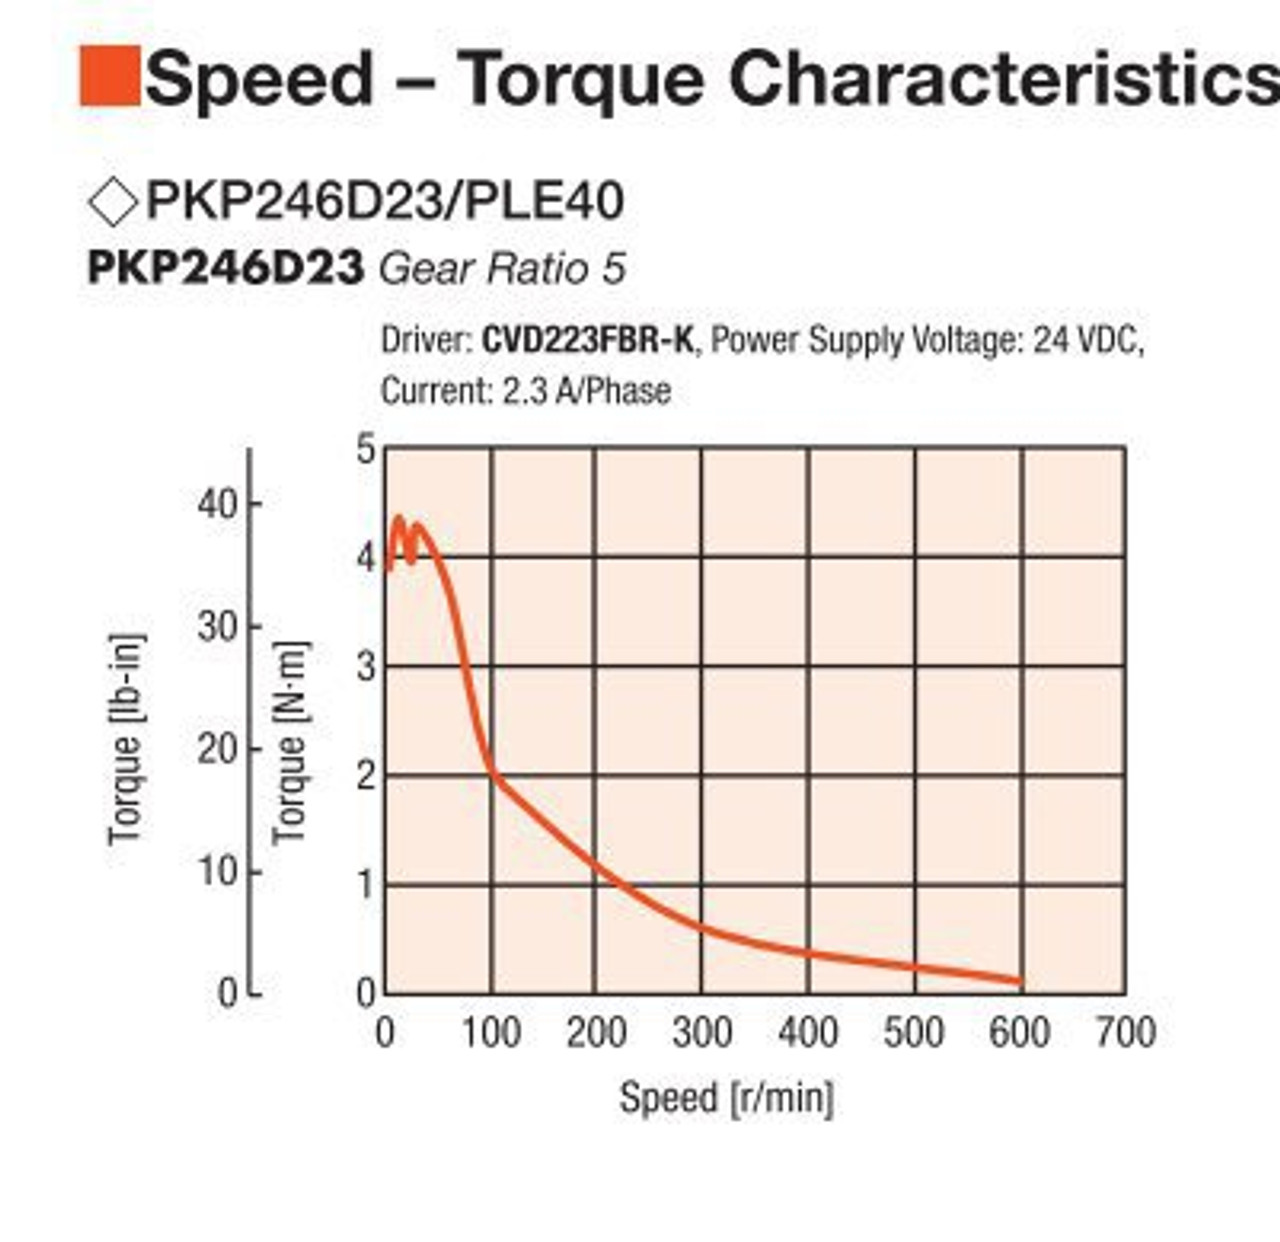 PKP246D23A2-R2FL / PLE40-5B / P00027 - Speed-Torque